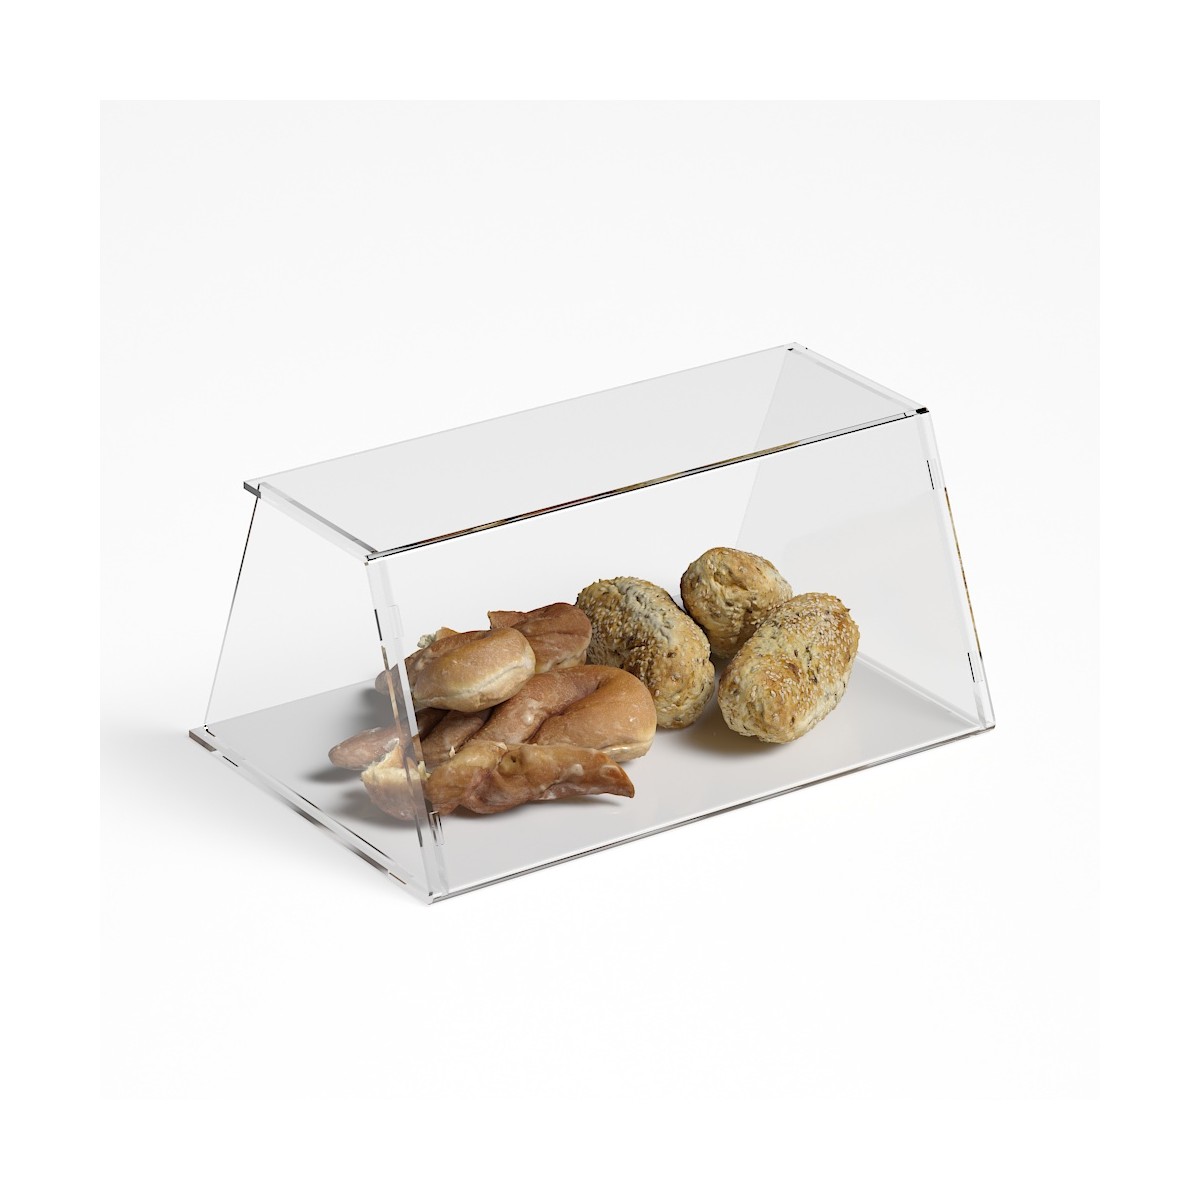 E-1192 PAR-A - Parafiato parasputi in plexiglass trasparente per alimenti con pannelli laterali - Misure: 45x31x H21 cm